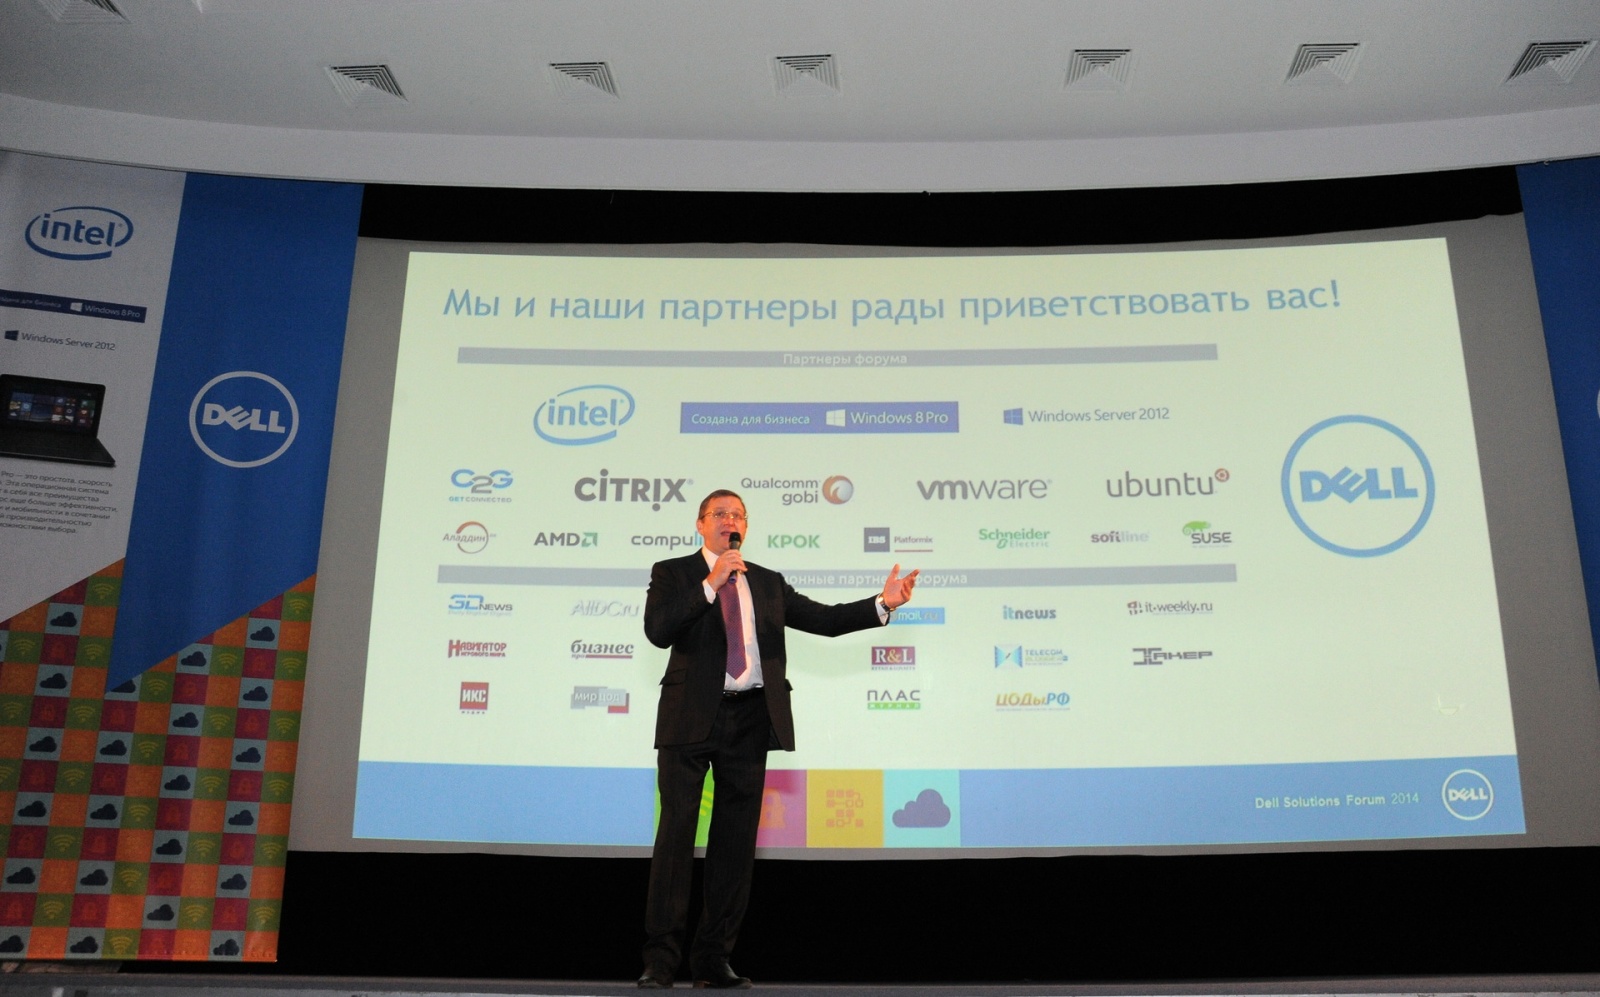 Как прошёл Форум решений Dell 2014 в Москве - 2